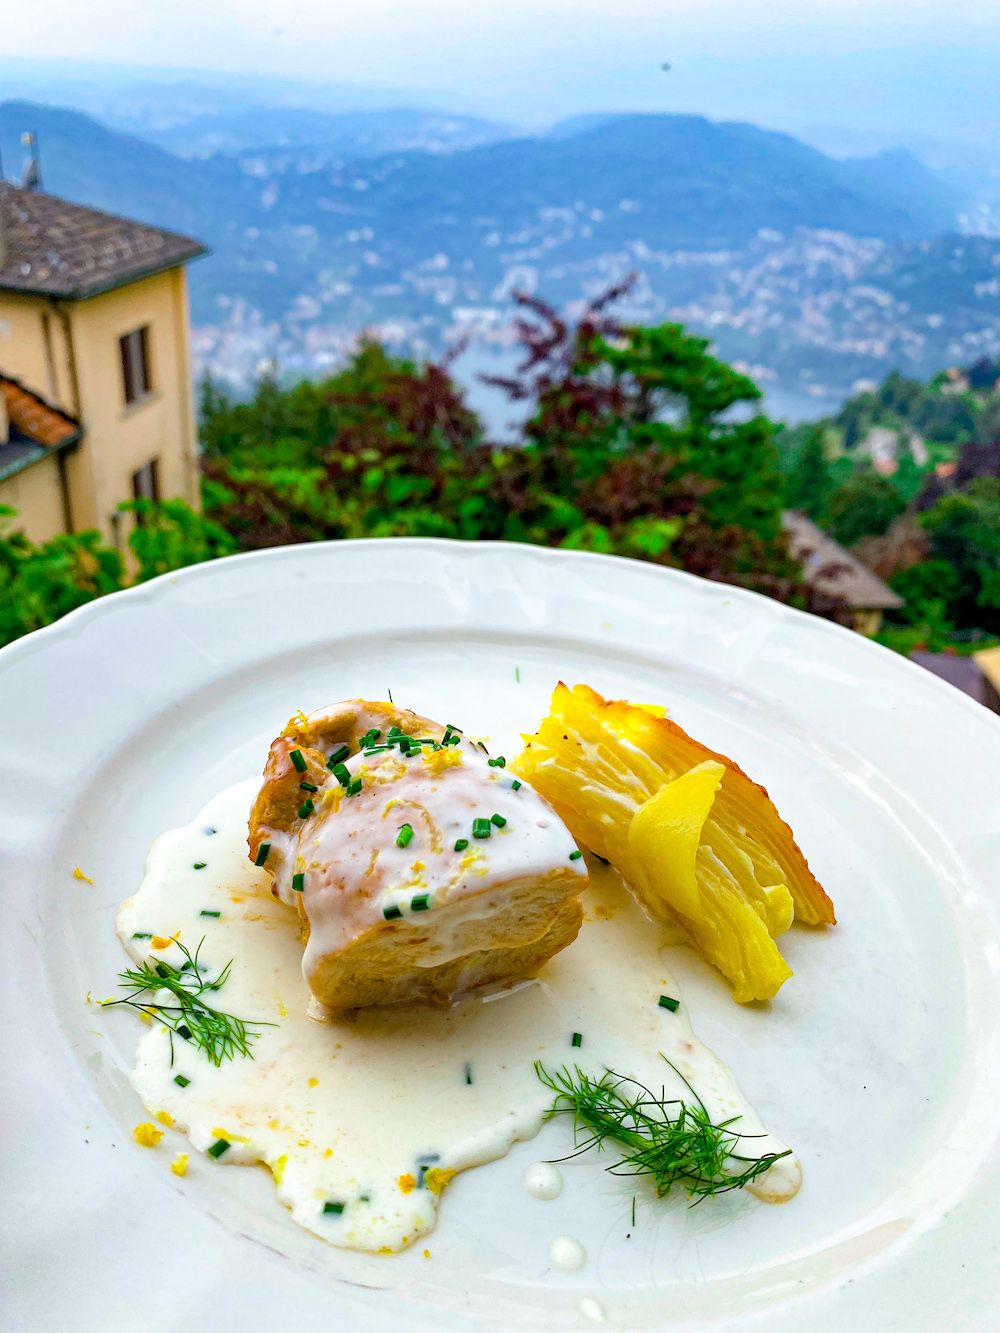 Photo of chicken and potatoes at Bellavista Ristorante